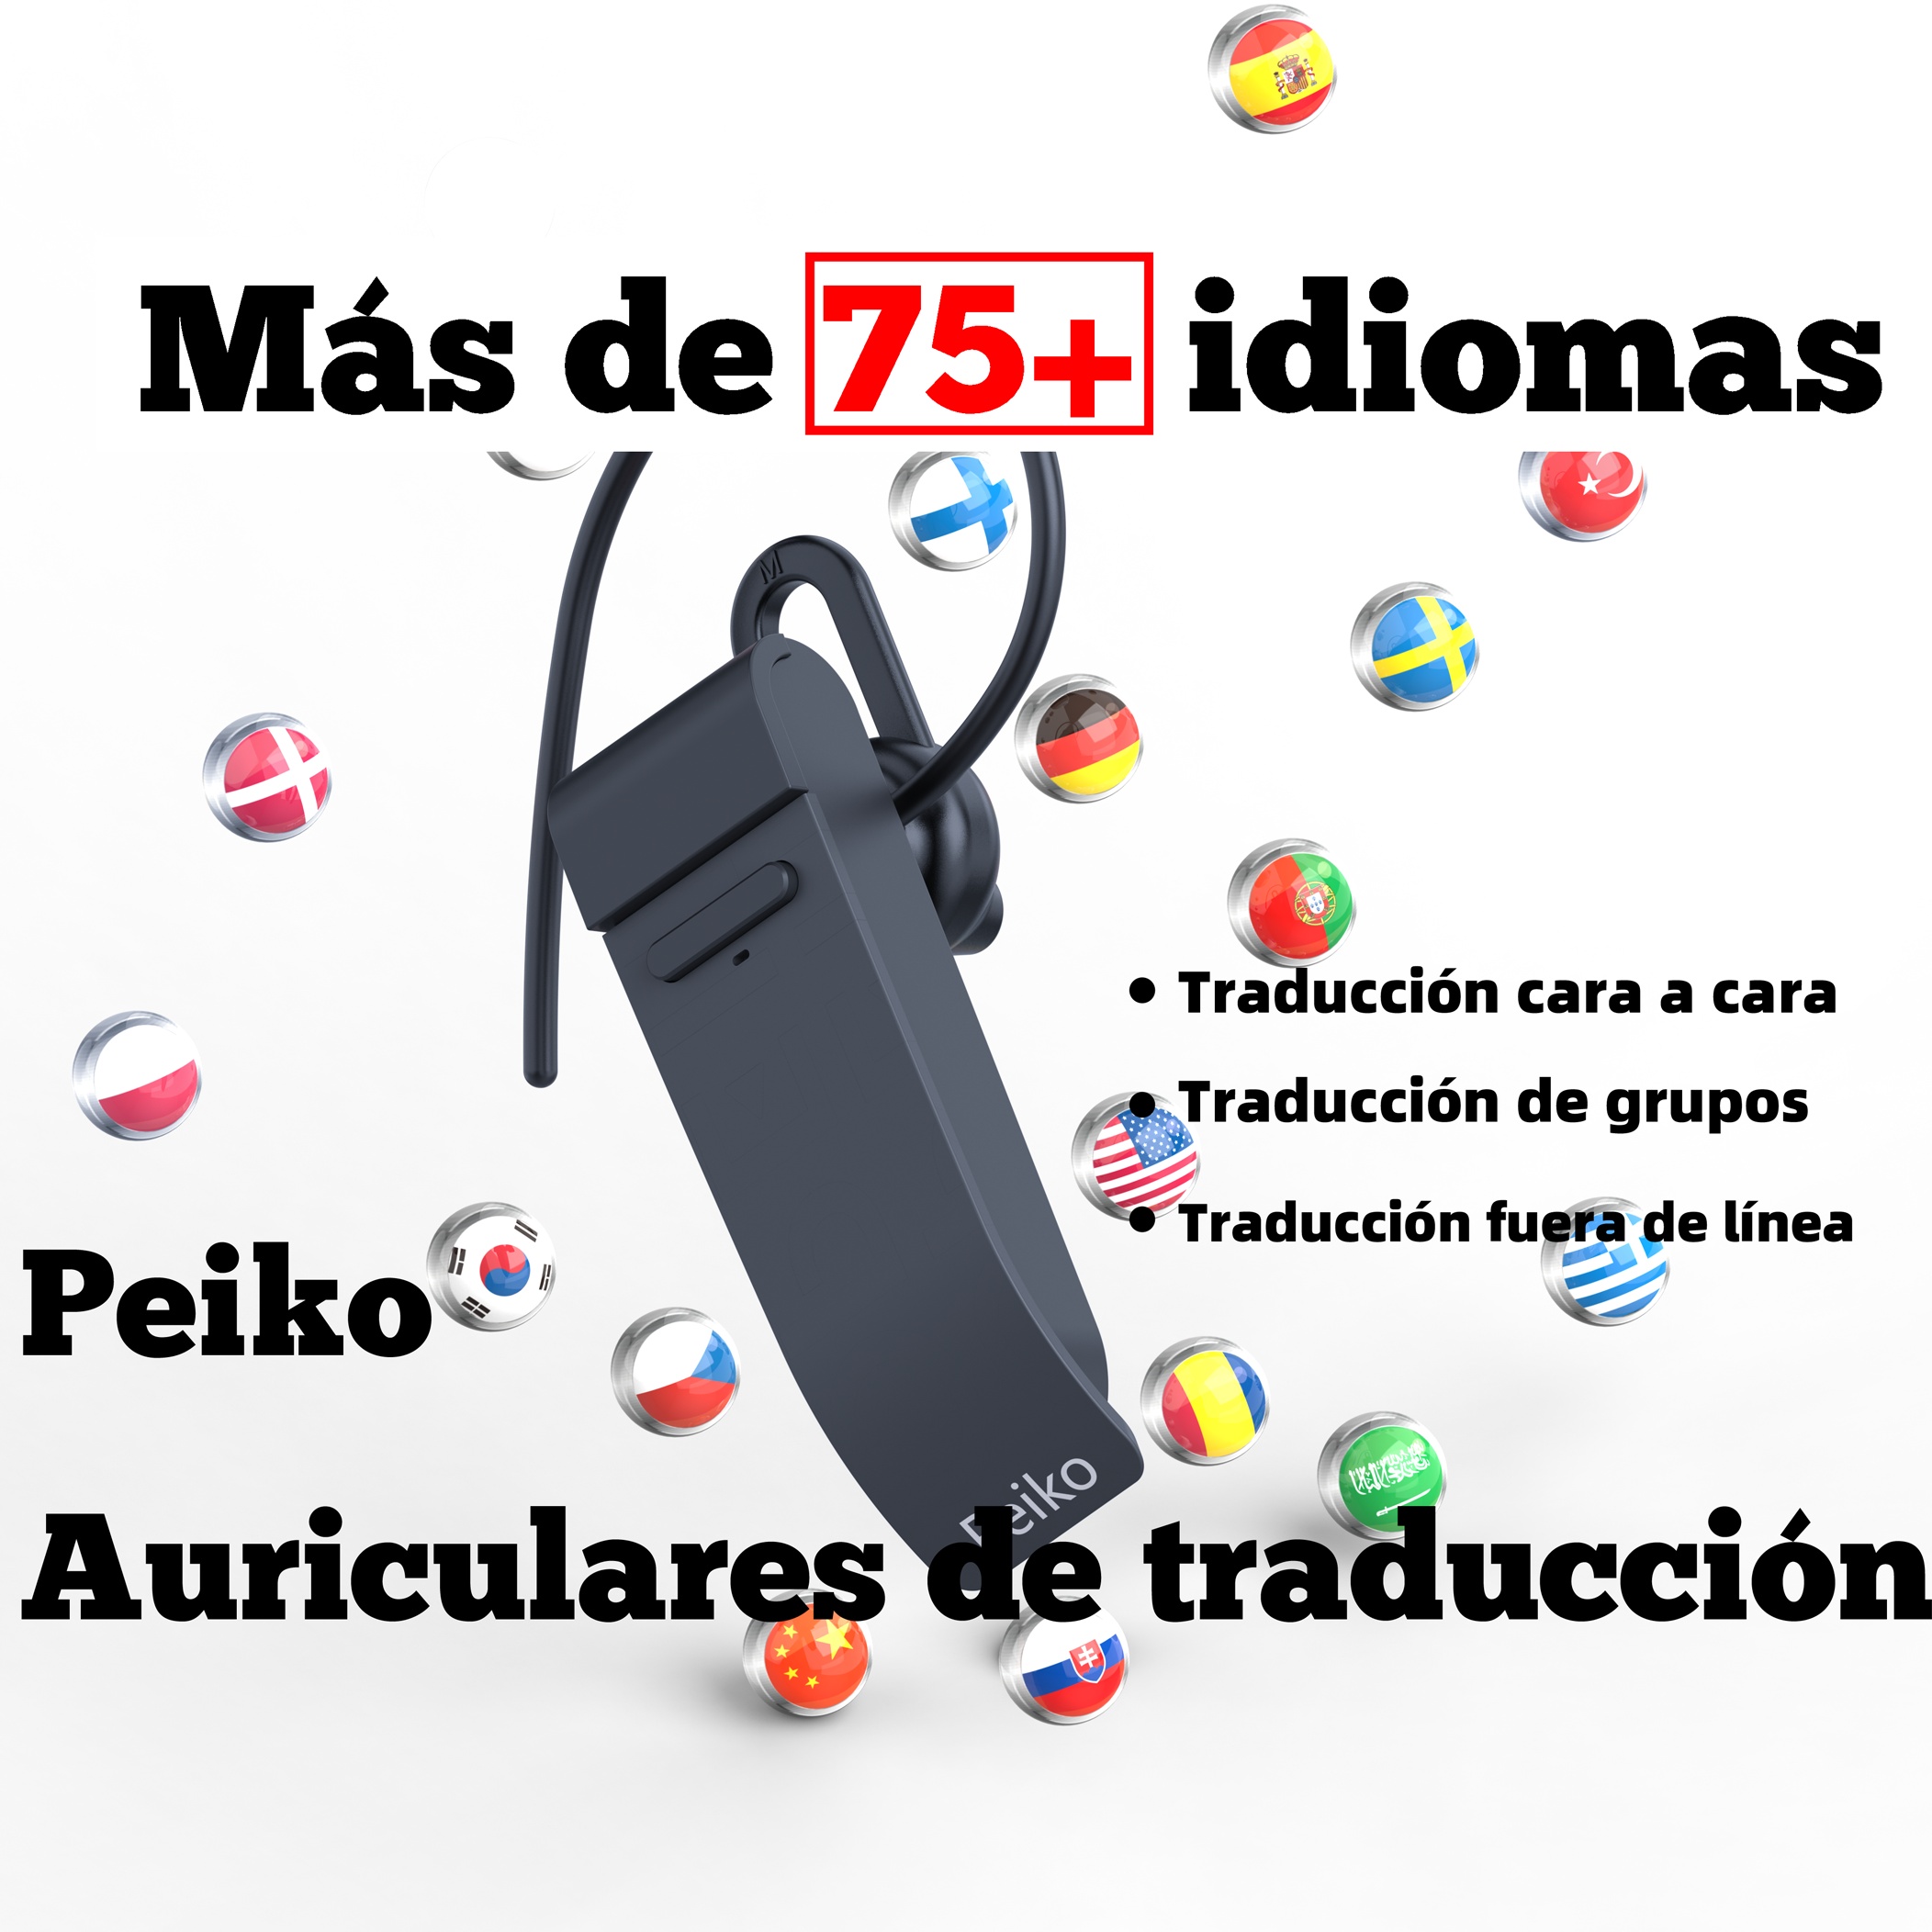 Auriculares traductores de idiomas M8, auriculares Bluetooth inalámbricos  que admiten traducción a 144 idiomas, indicador de carga, traducción en